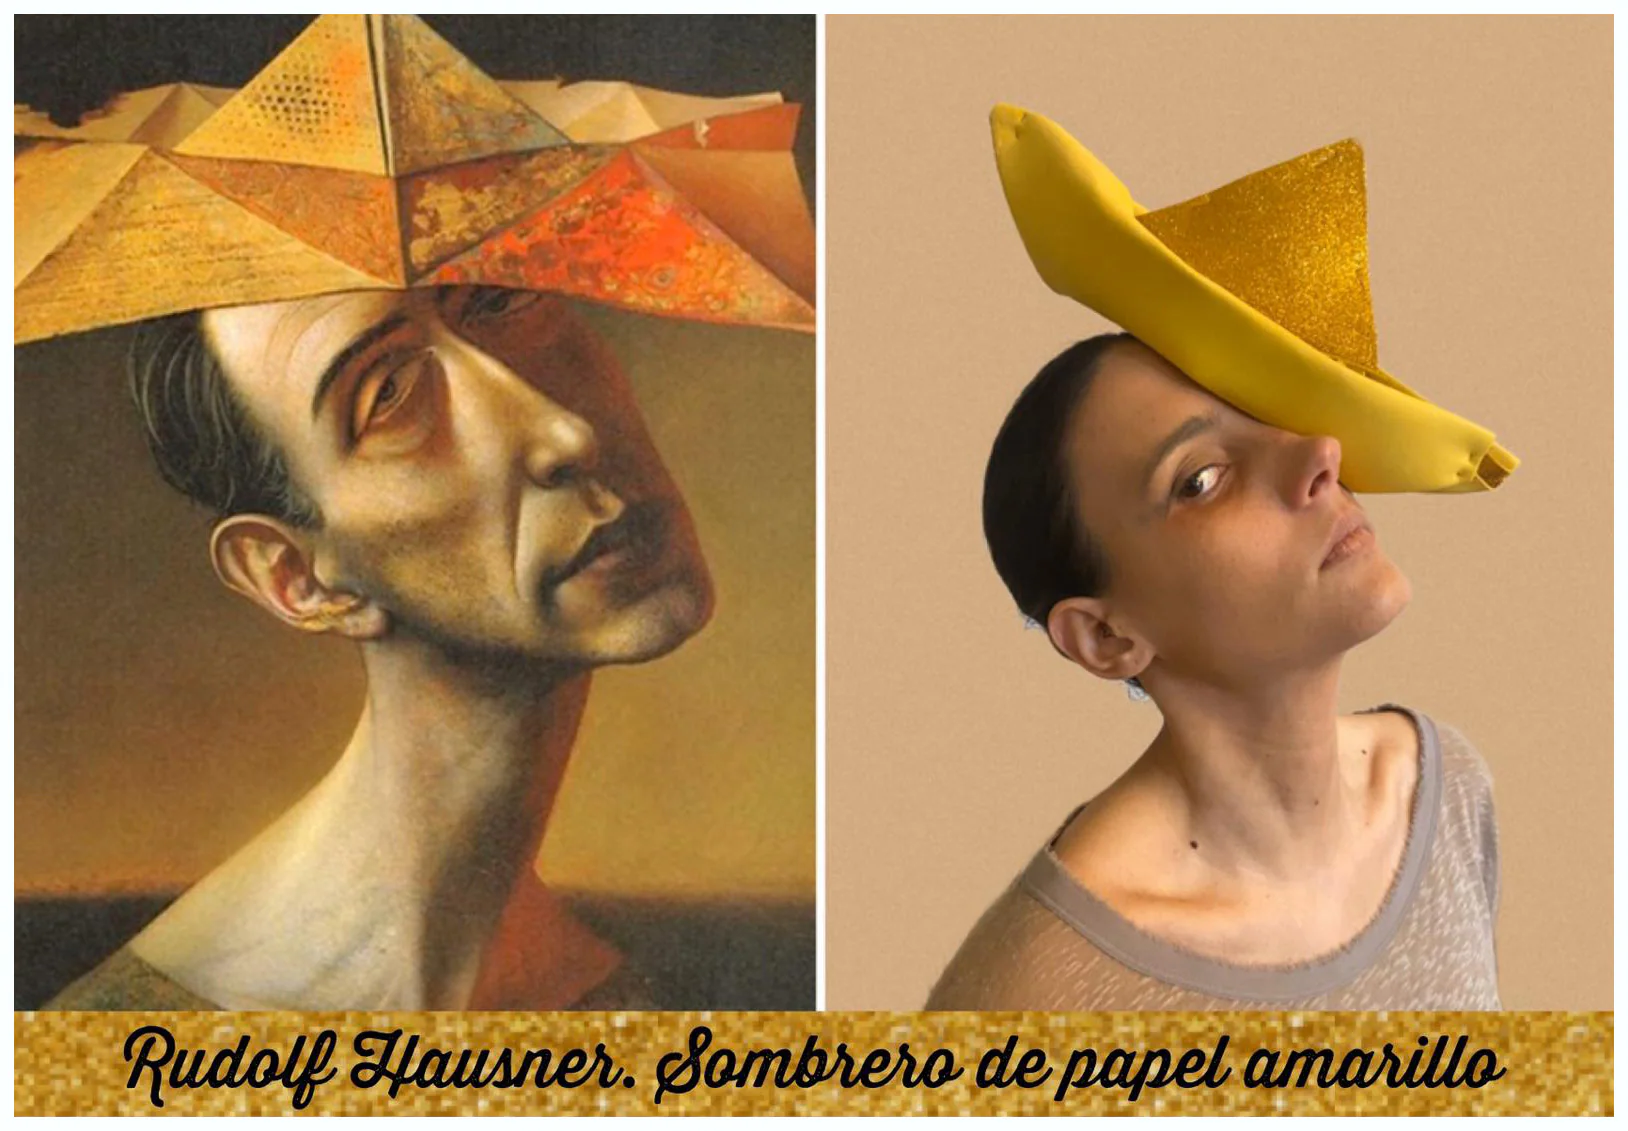 Título del cuadro: ‘Sombrero de papel amarillo’. Autor/a: Rudolf Hausneer. Pintado: 1955. Maestro/a imitador: Lucía López, Maestra de Infantil.